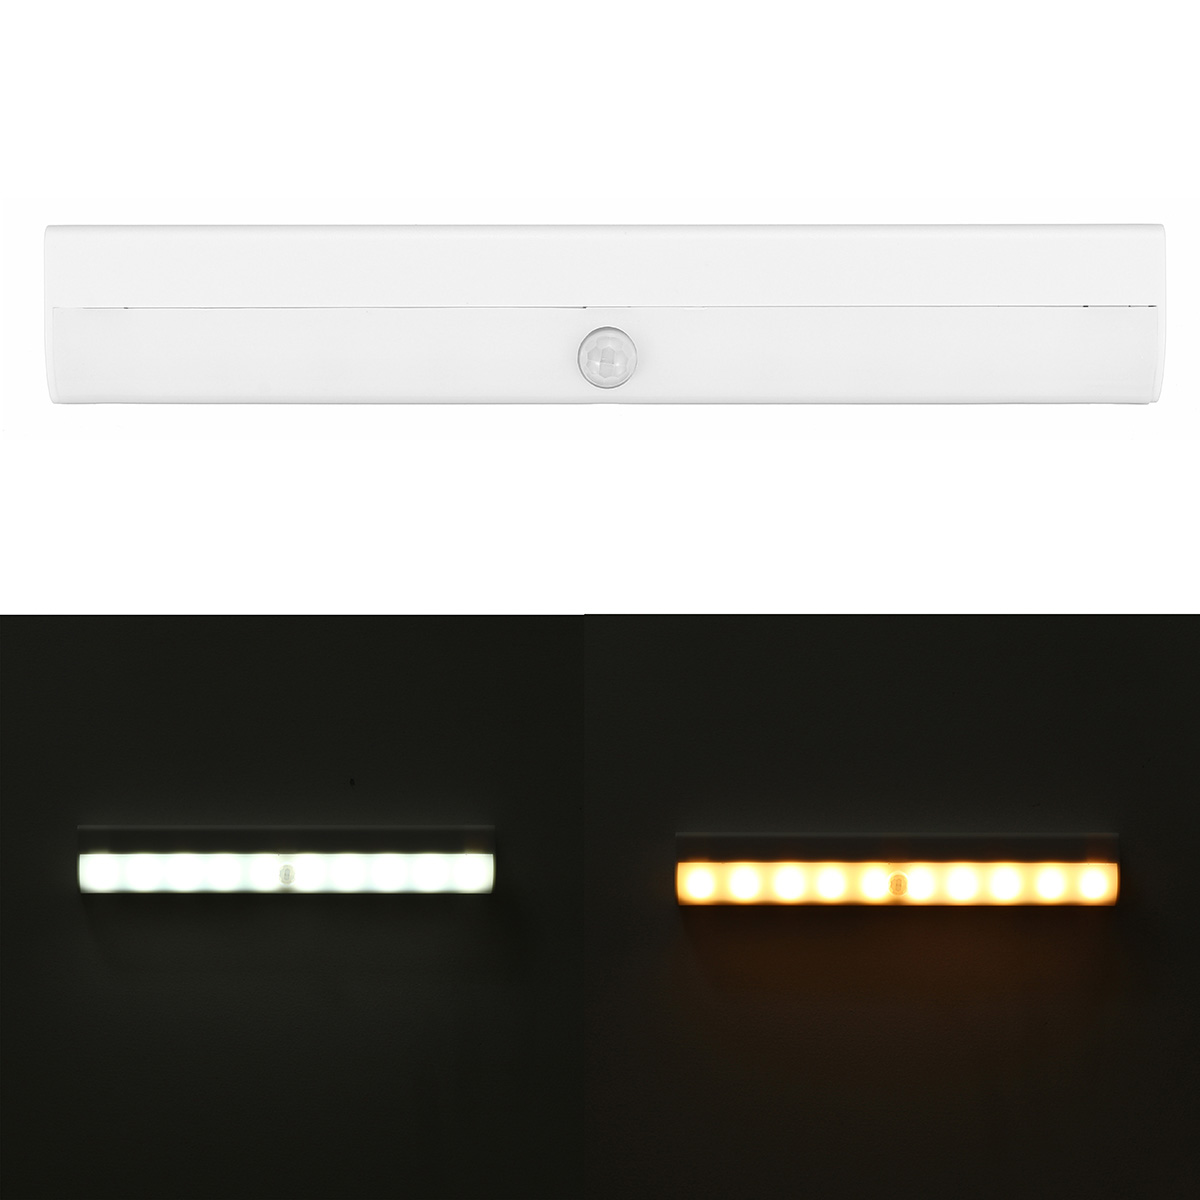 10-LED-LED-Motion-Sensor-Cabinet-Light-Bar-Wireless-BatteryUSB-Powered-WarmWhite-Lighting-for-Wardro-1744315-8